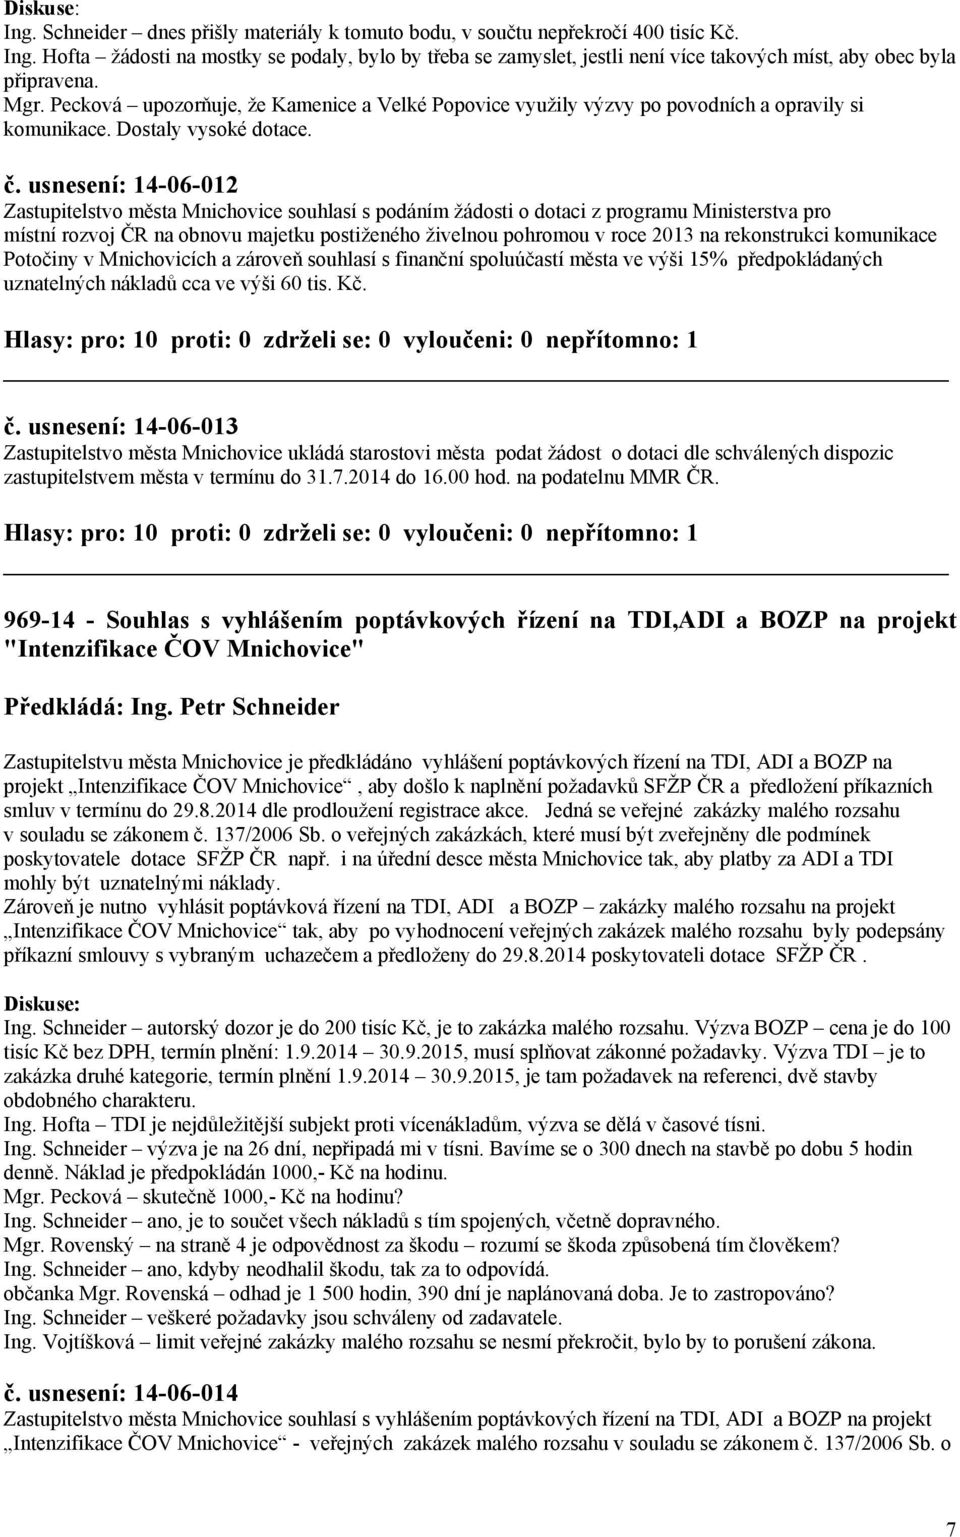 usnesení: 14-06-012 Zastupitelstvo města Mnichovice souhlasí s podáním žádosti o dotaci z programu Ministerstva pro místní rozvoj ČR na obnovu majetku postiženého živelnou pohromou v roce 2013 na